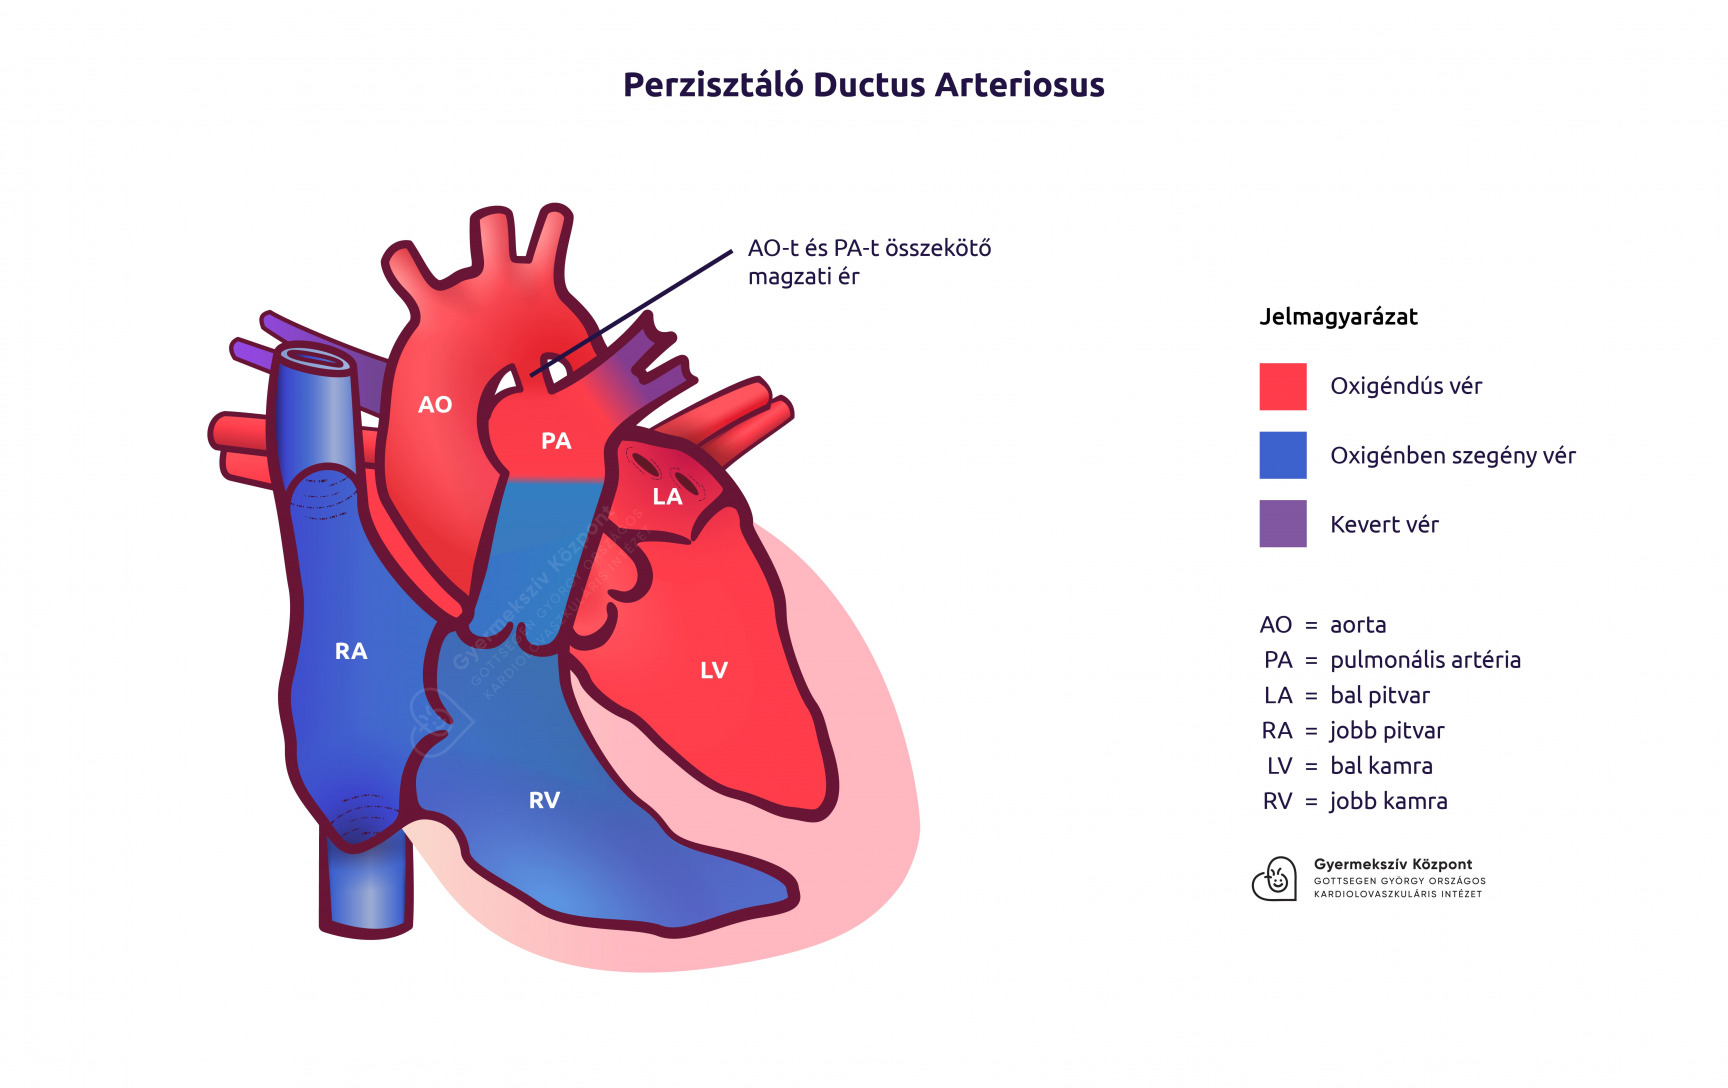 Perzisztáló ductus arteriosus rajz